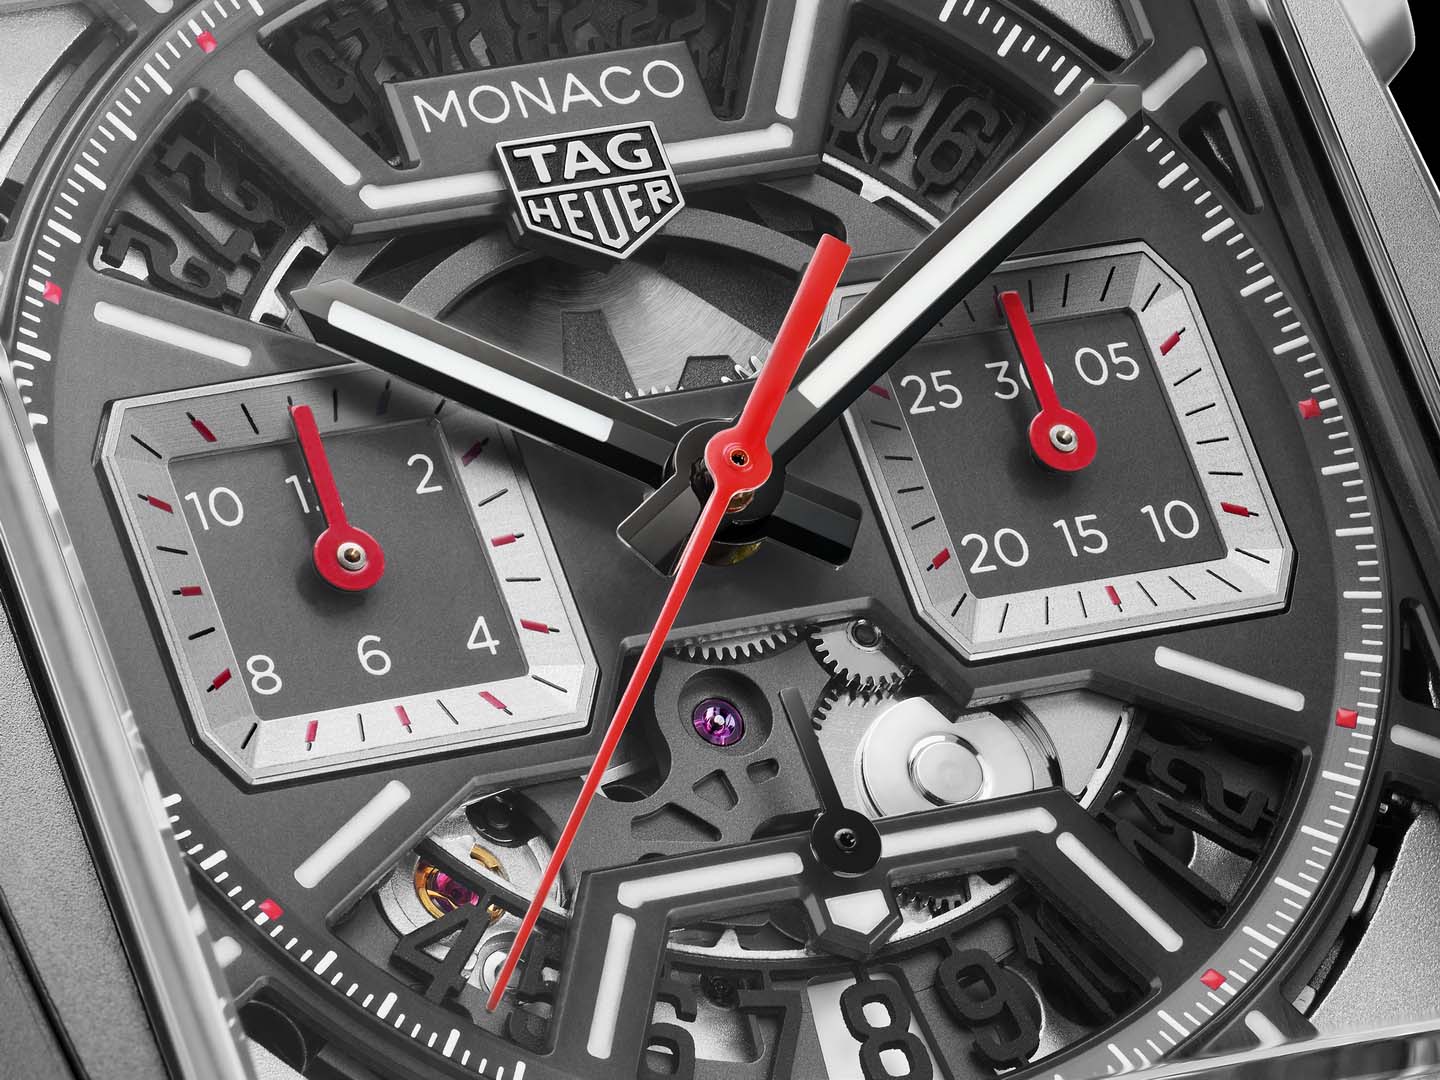 TAG Heuer Monaco Sekeleton Chronograph